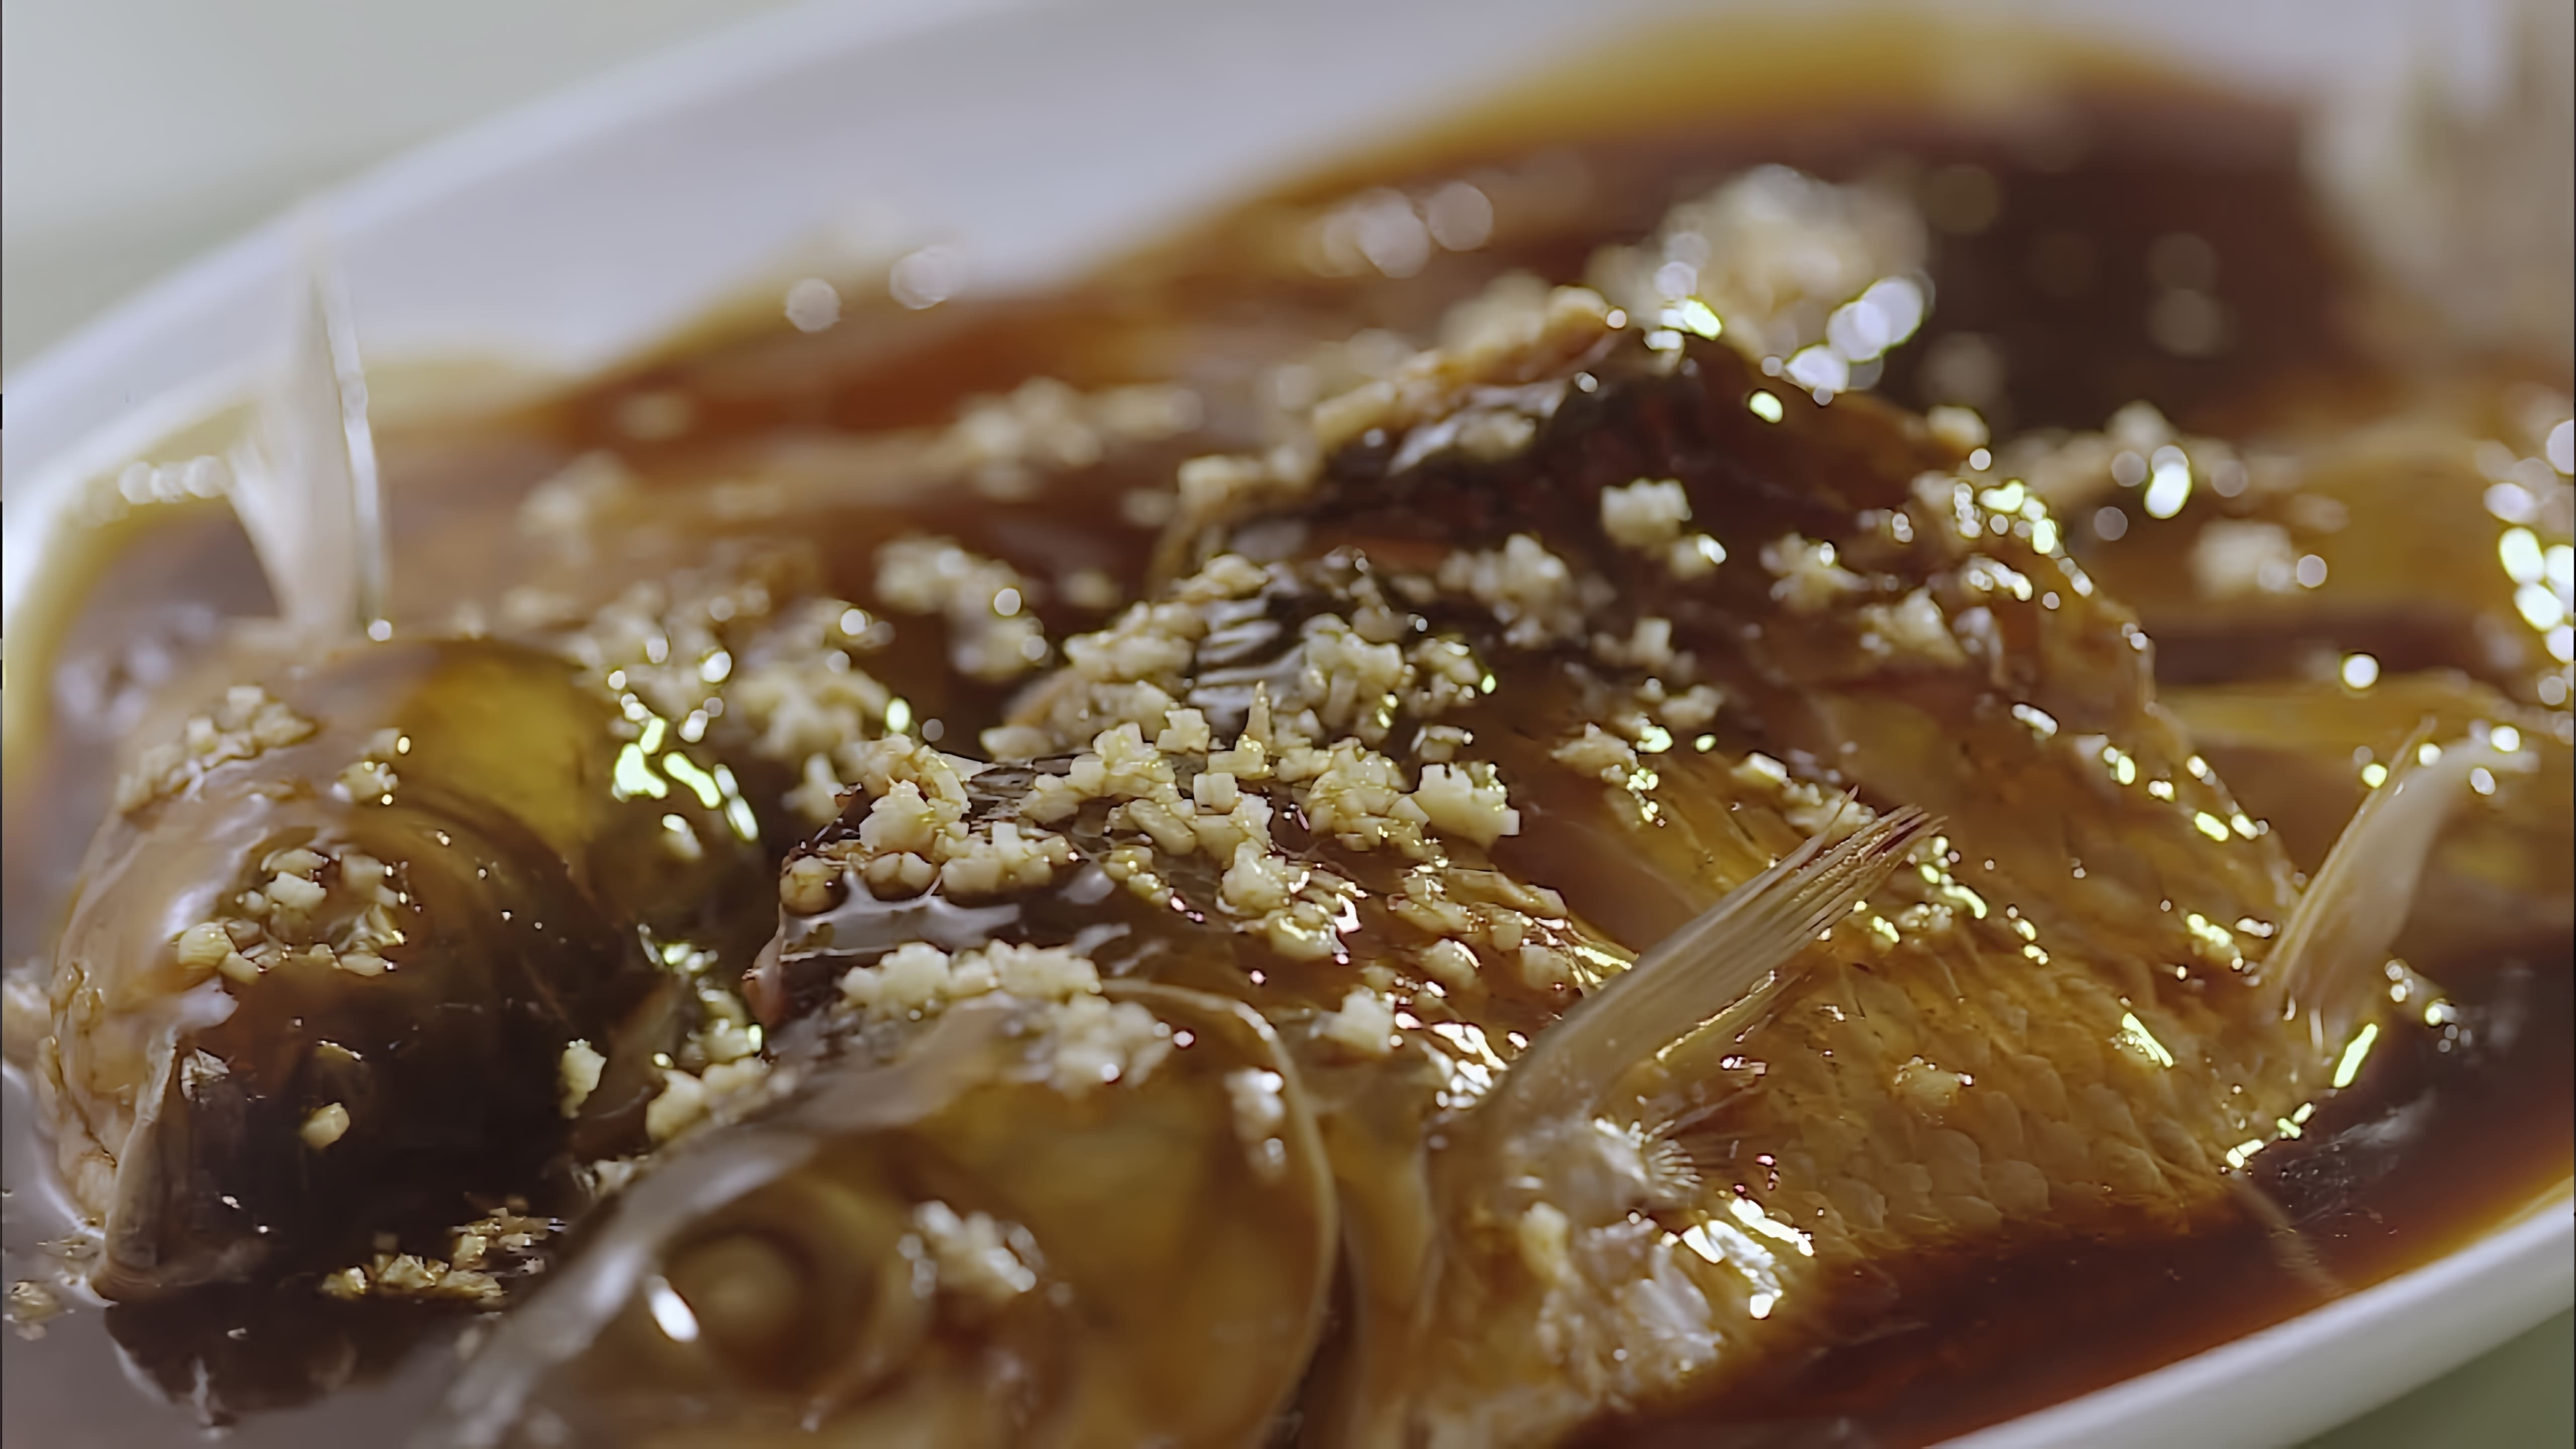 Жареная рыба в кисло-сладком соусе - это вкусное и простое блюдо, которое можно приготовить дома